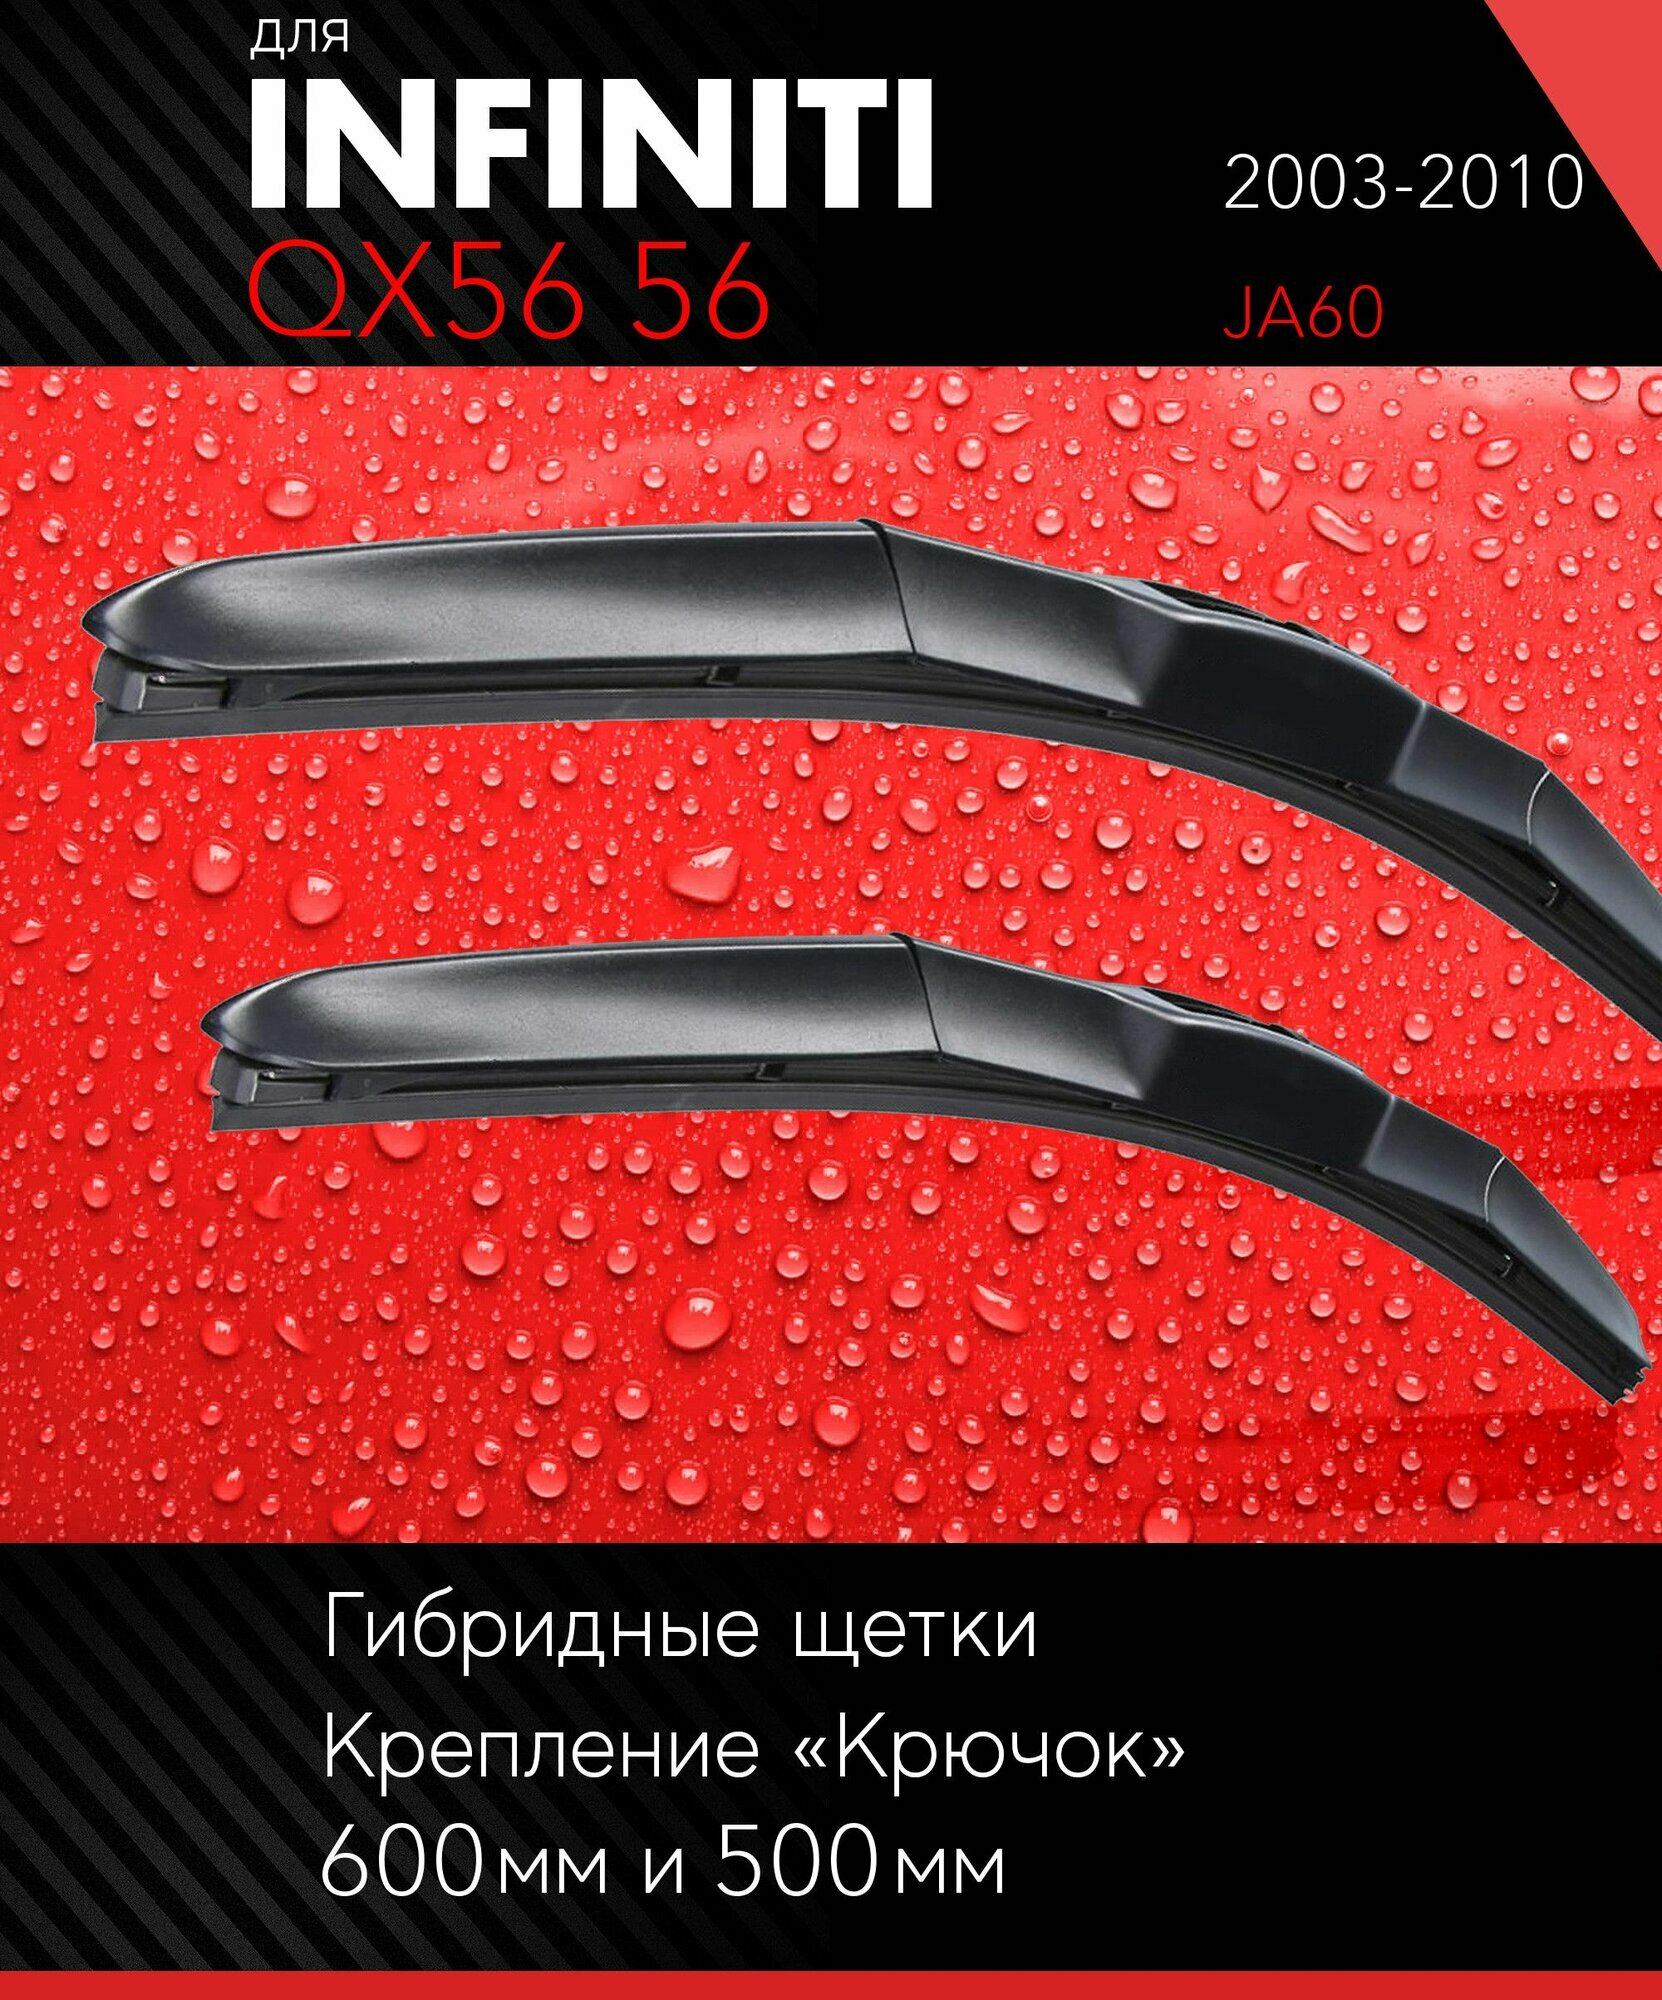 2 щетки стеклоочистителя 600 500 мм на Инфинити Ку Икс 56 2003-2010, гибридные дворники комплект для Infiniti QX56 56 (JA60) - Autoled